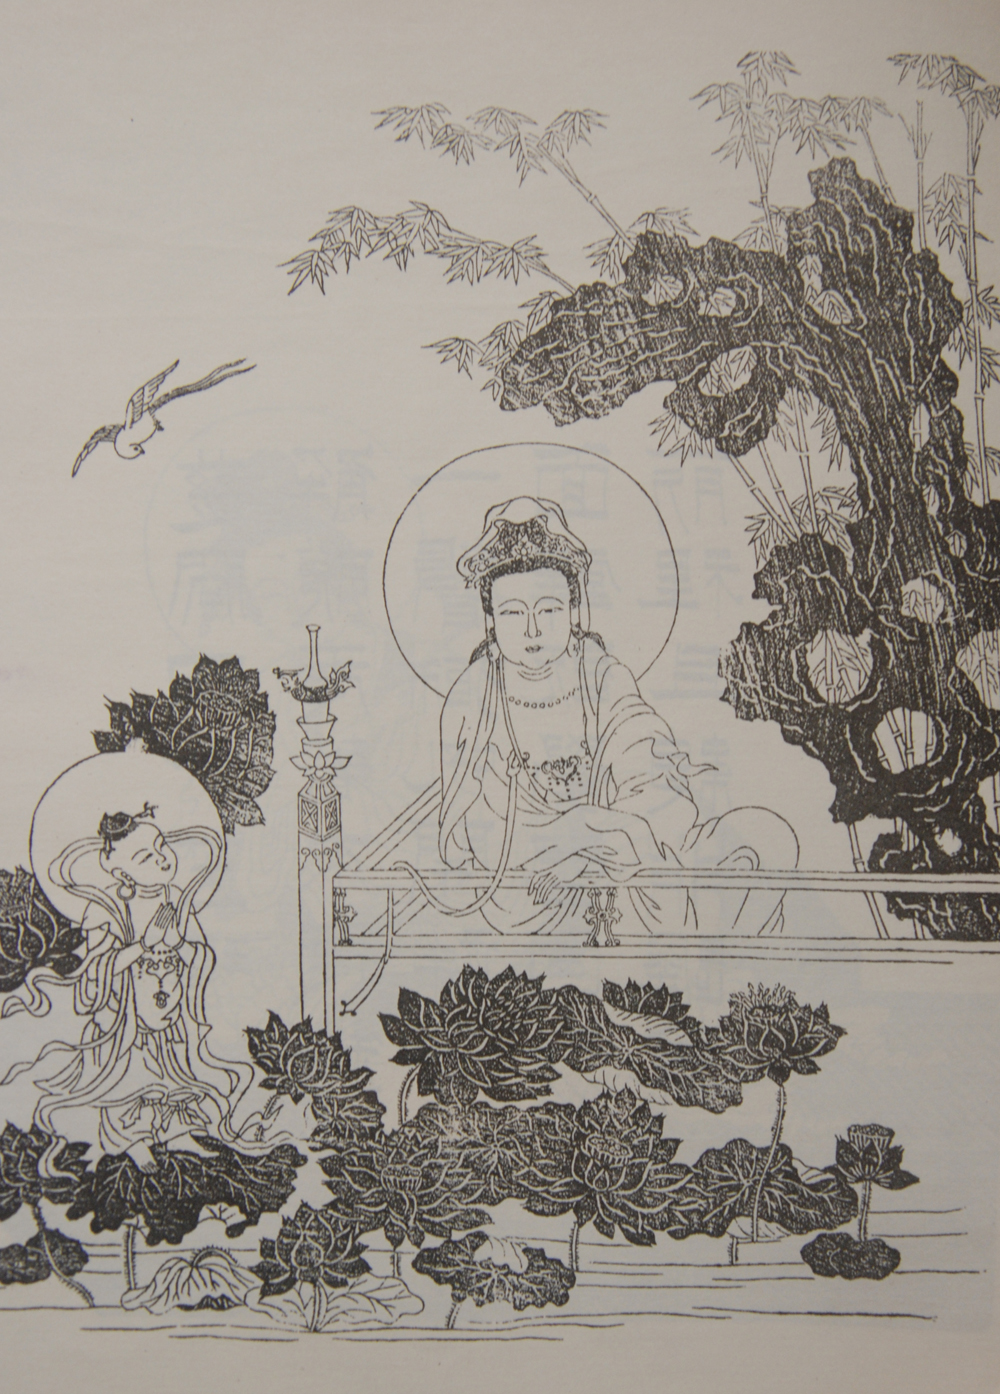 金延林:肖像画影响下的九莲菩萨像 中国宗教学术网 2017年4月5日